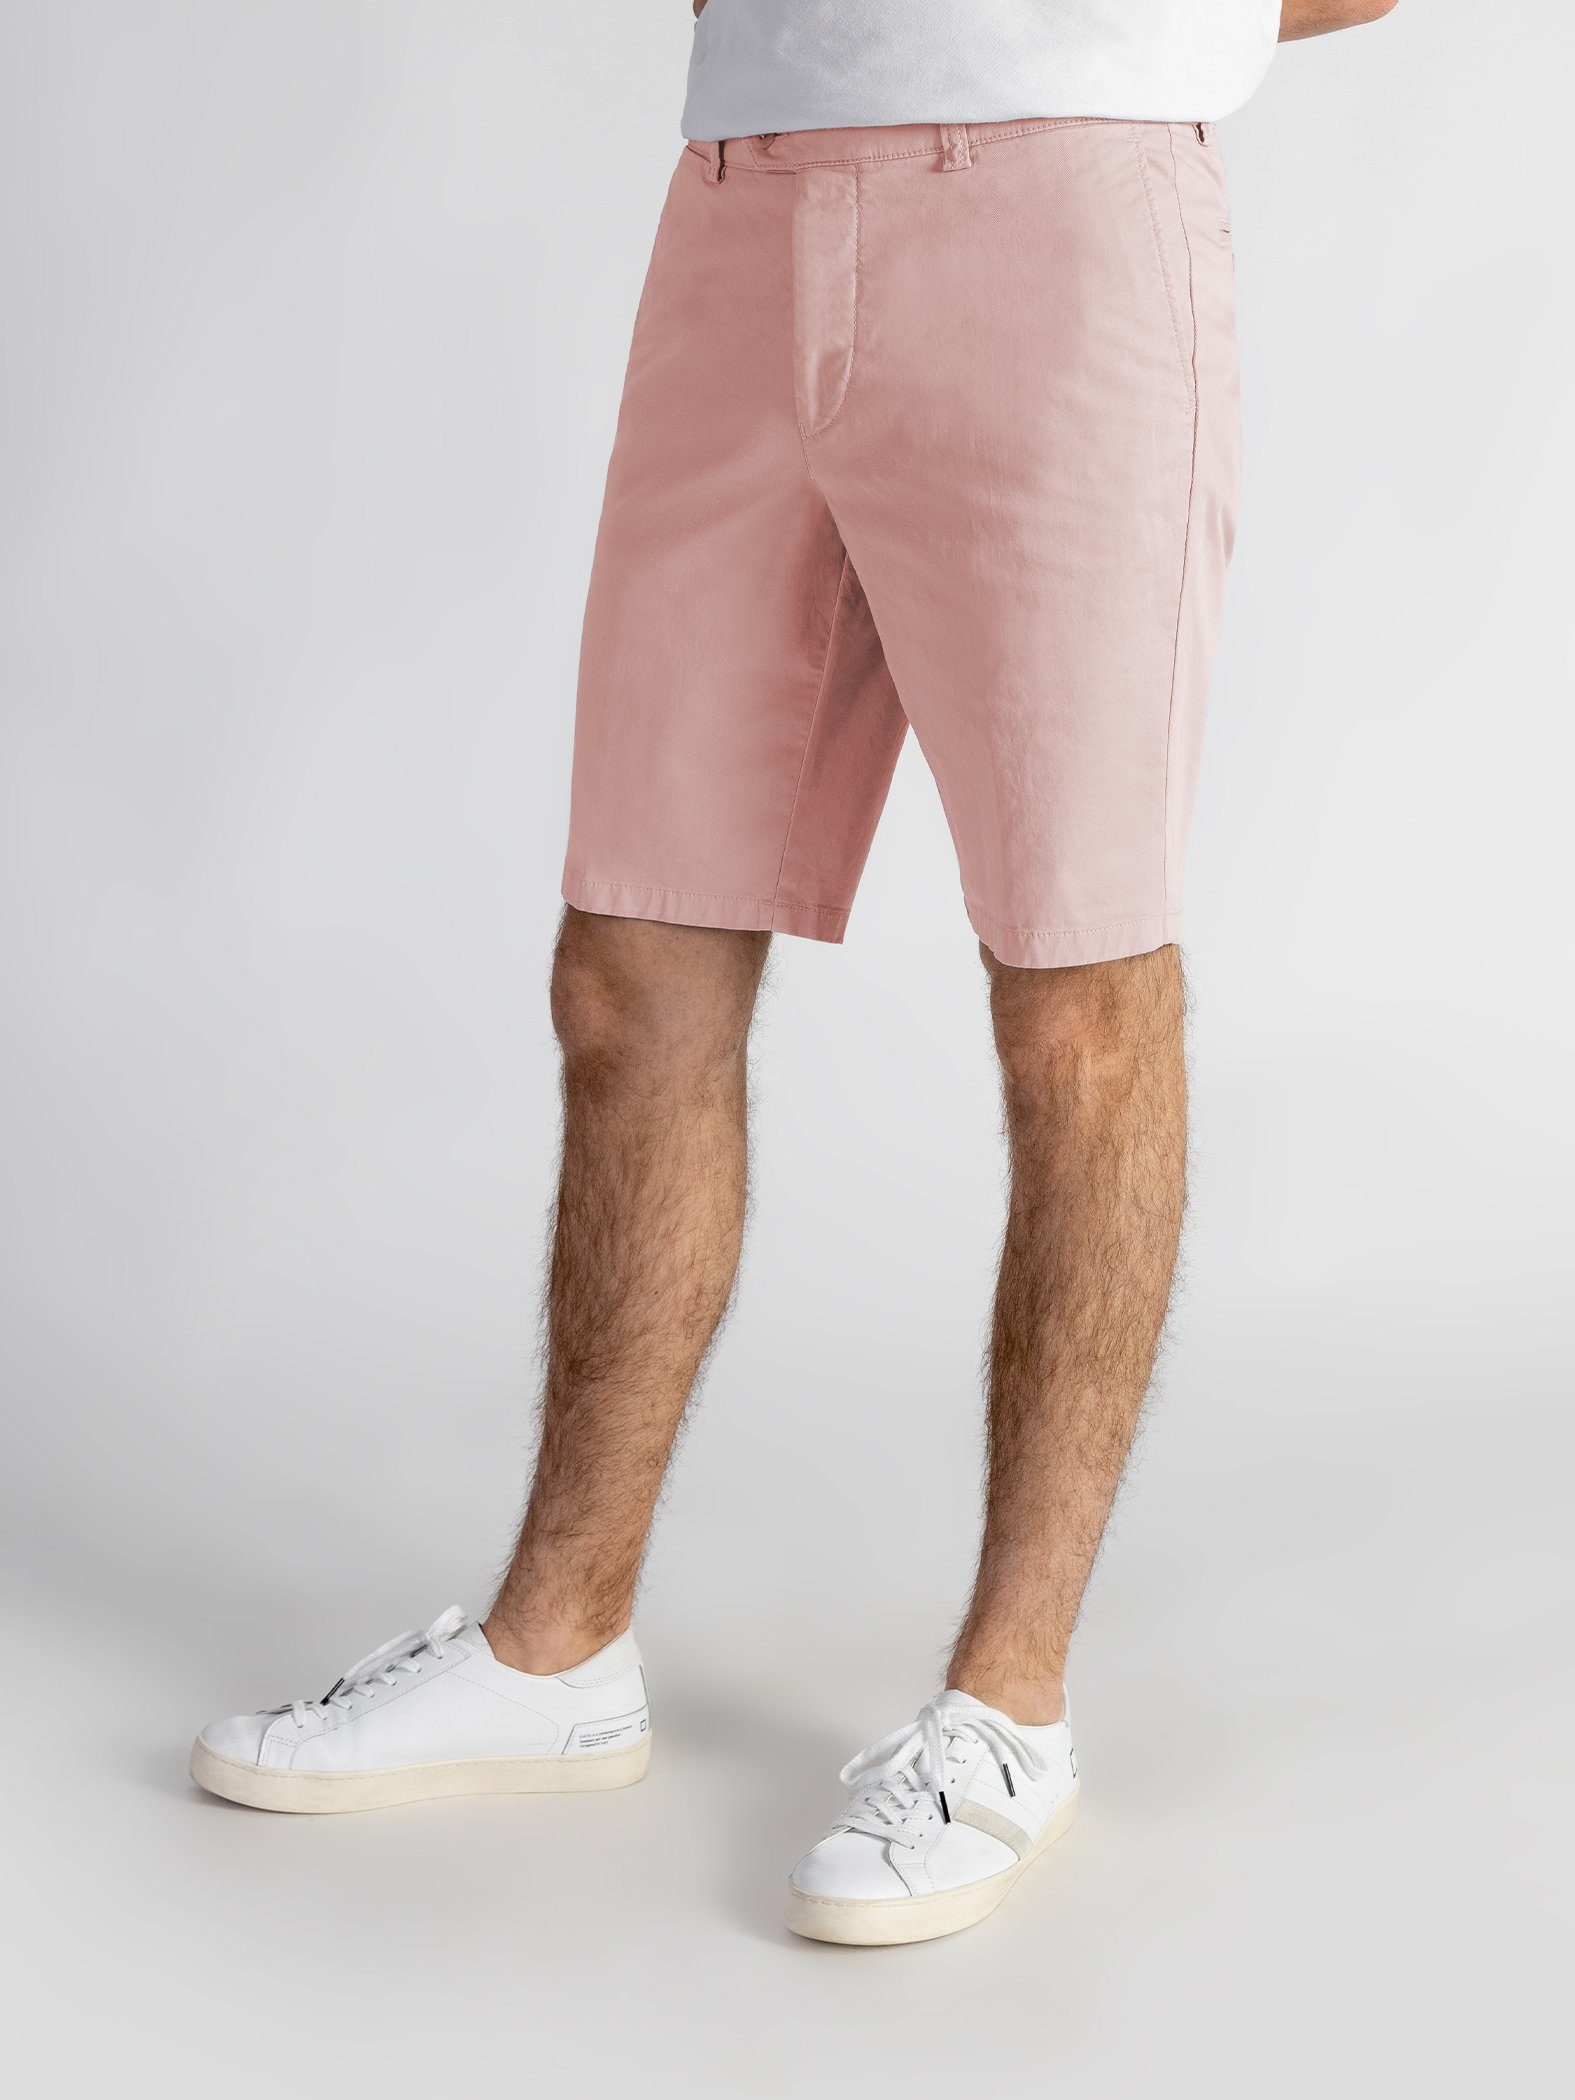 TwoMates Shorts Shorts mit elastischem Bund, Farbauswahl, GOTS-zertifiziert rosa